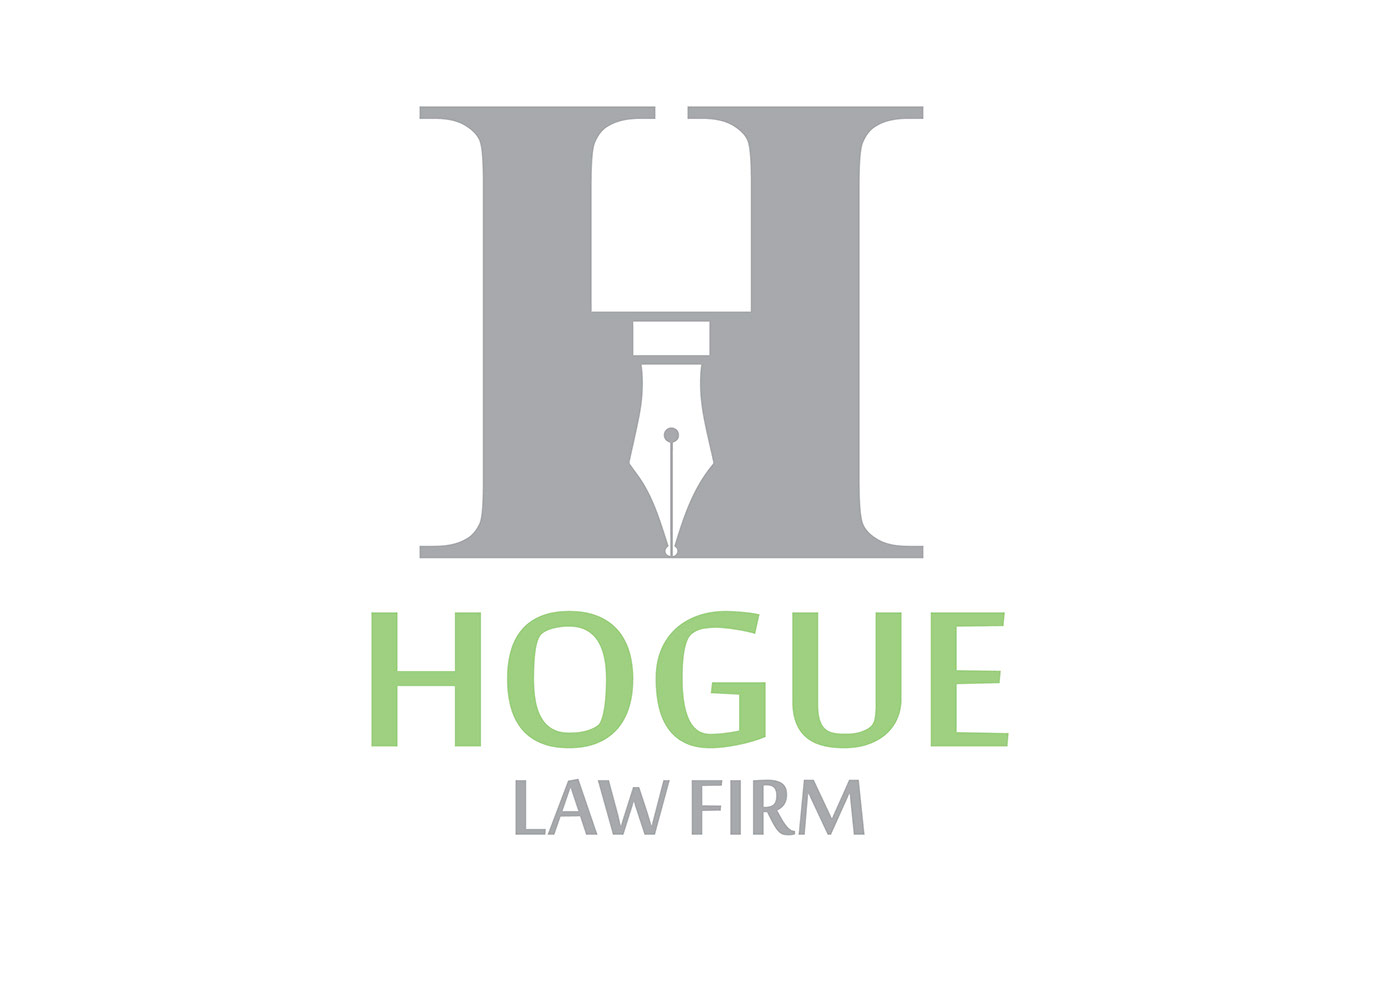 logo law firm law lawyer Logo Design